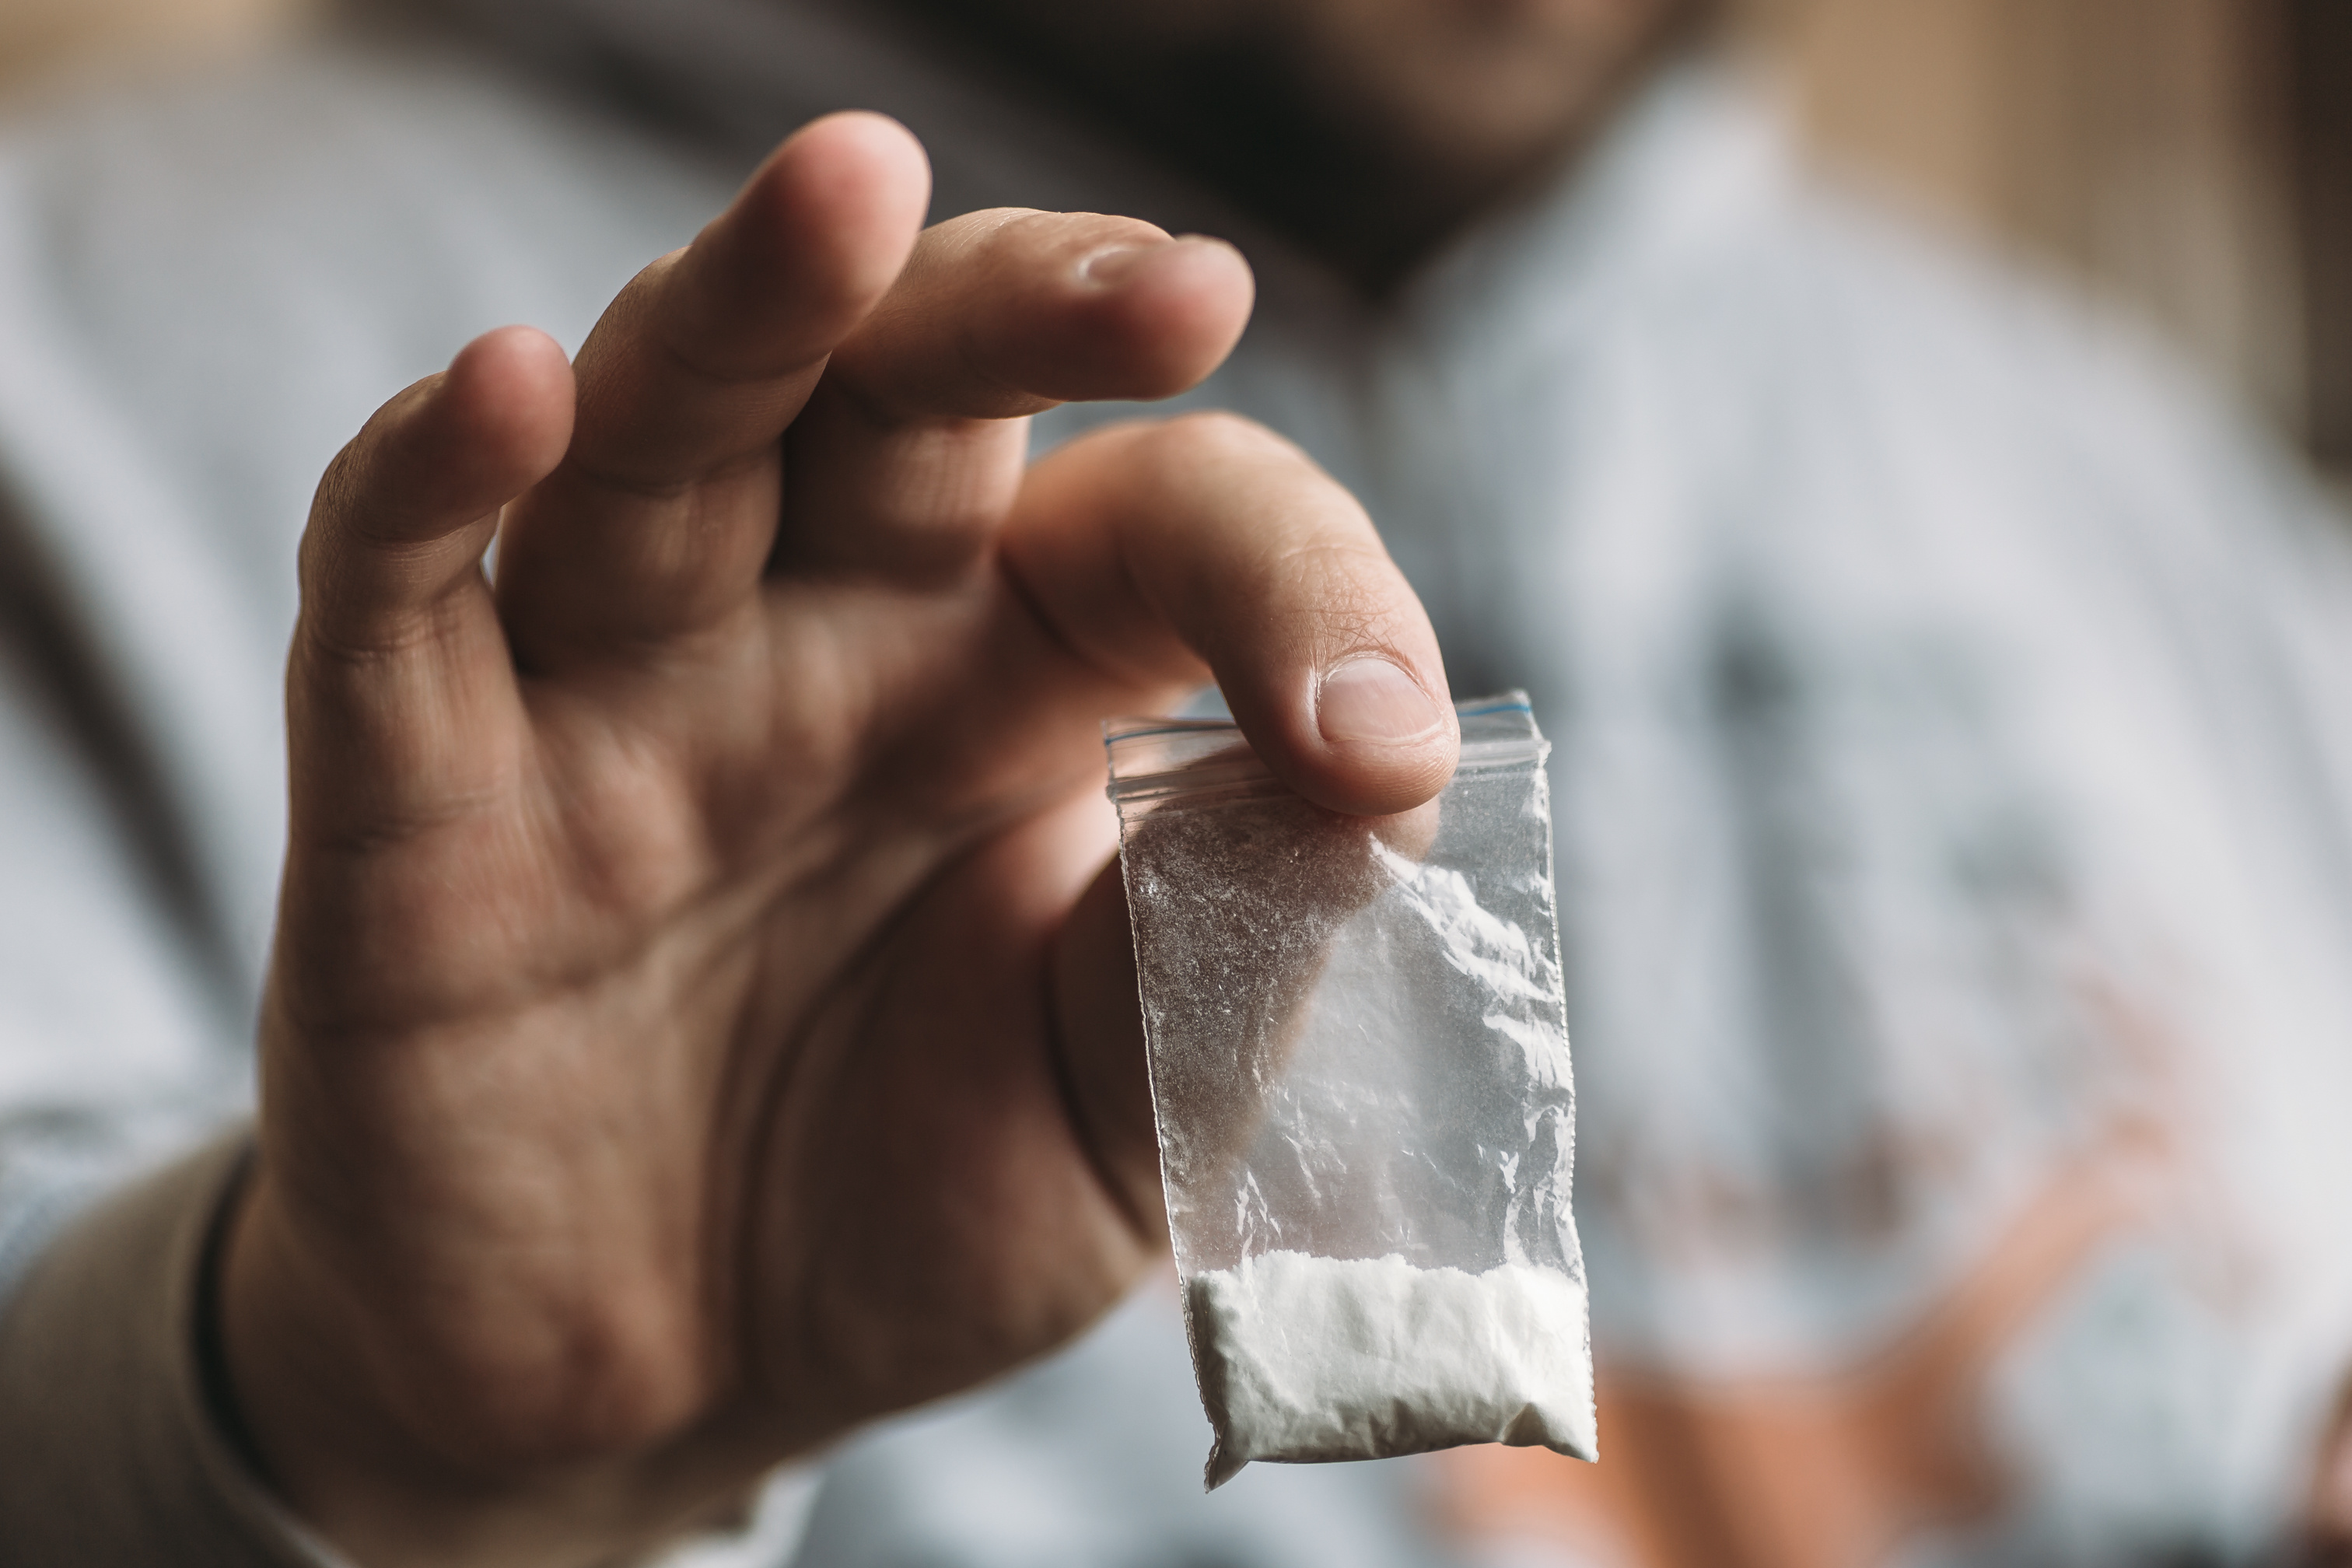 L'addiction à la cocaïne fait vieillir prématurément le cerveau d'un point de vue biologique. © DedMityay, Adobe Stock